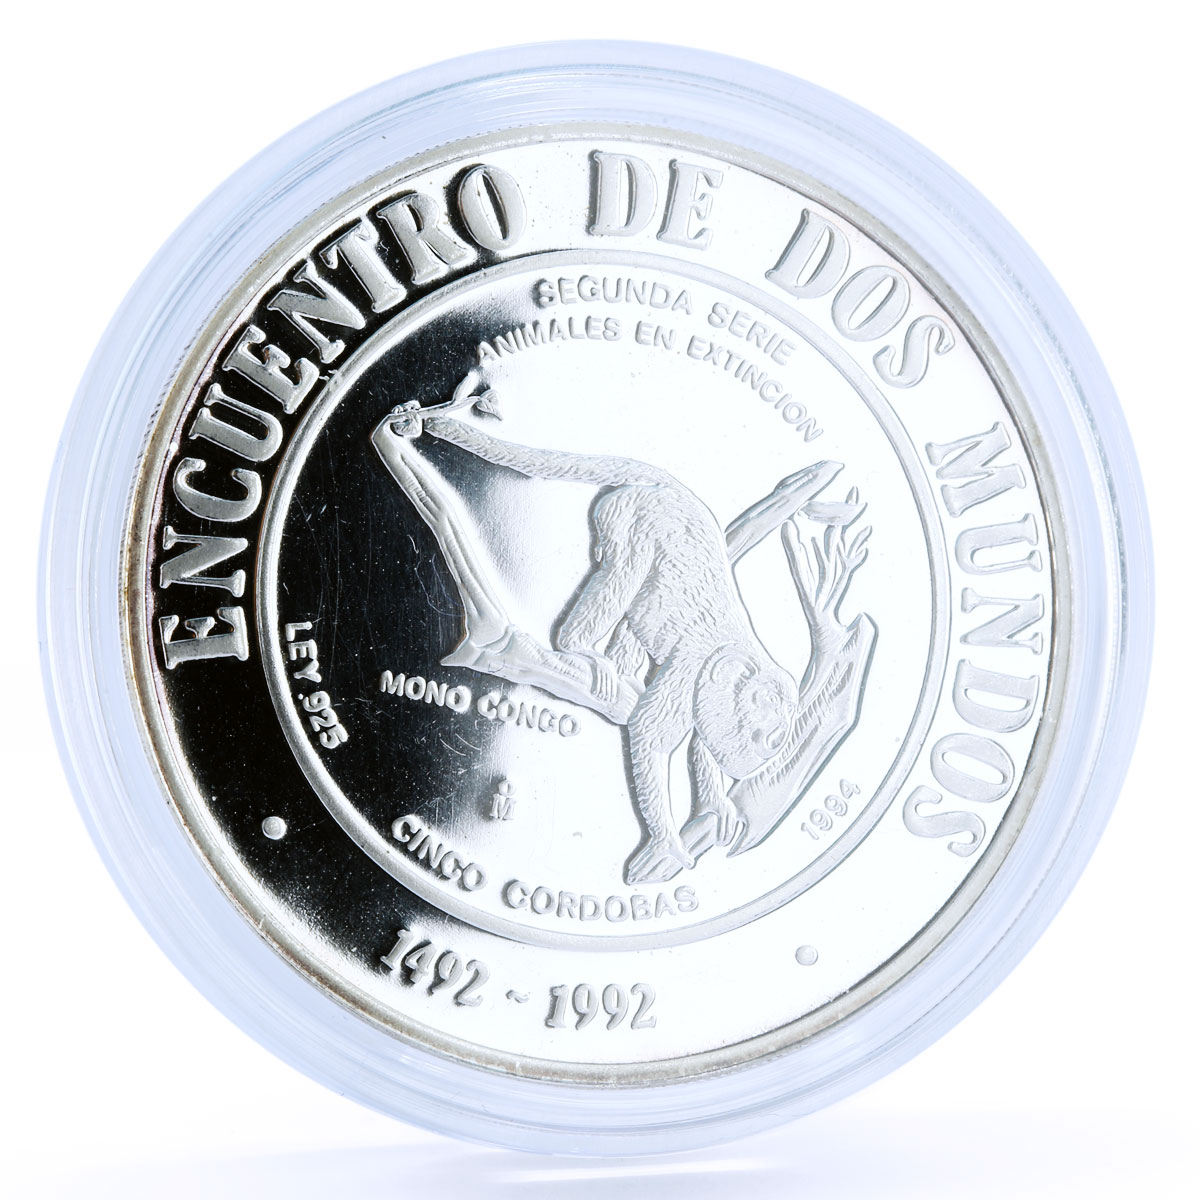 Nicaragua 5 cordobas Ibero America Congo Monkey Fauna Animals silver coin 1994